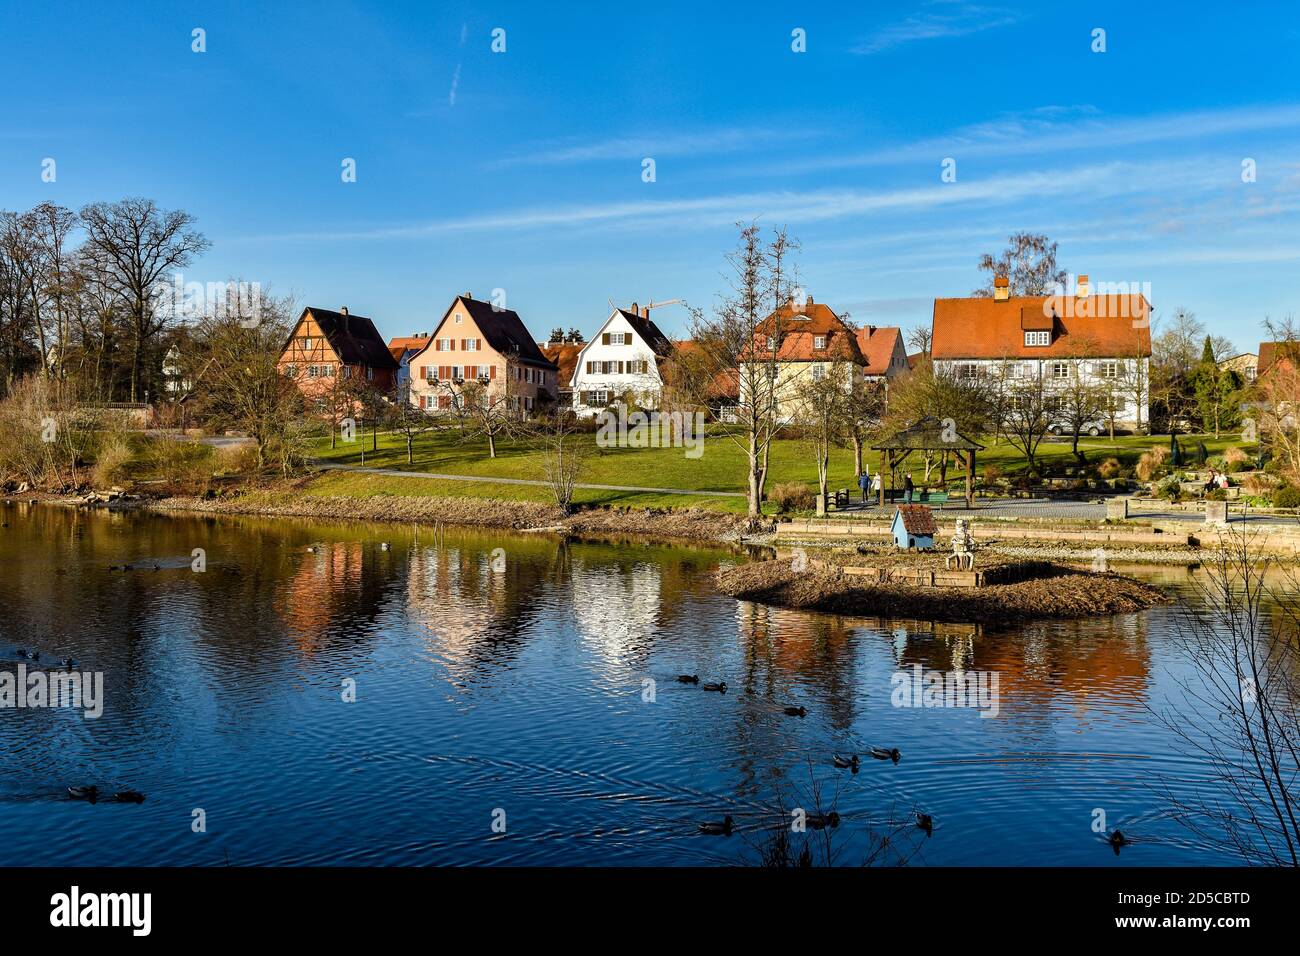 Dinkelsbühl en el momento del bautismo. Casa de entramado de madera de colores, casas, lago, cielo azul. Baden-Wurttemberg, Alemania. Foto de stock